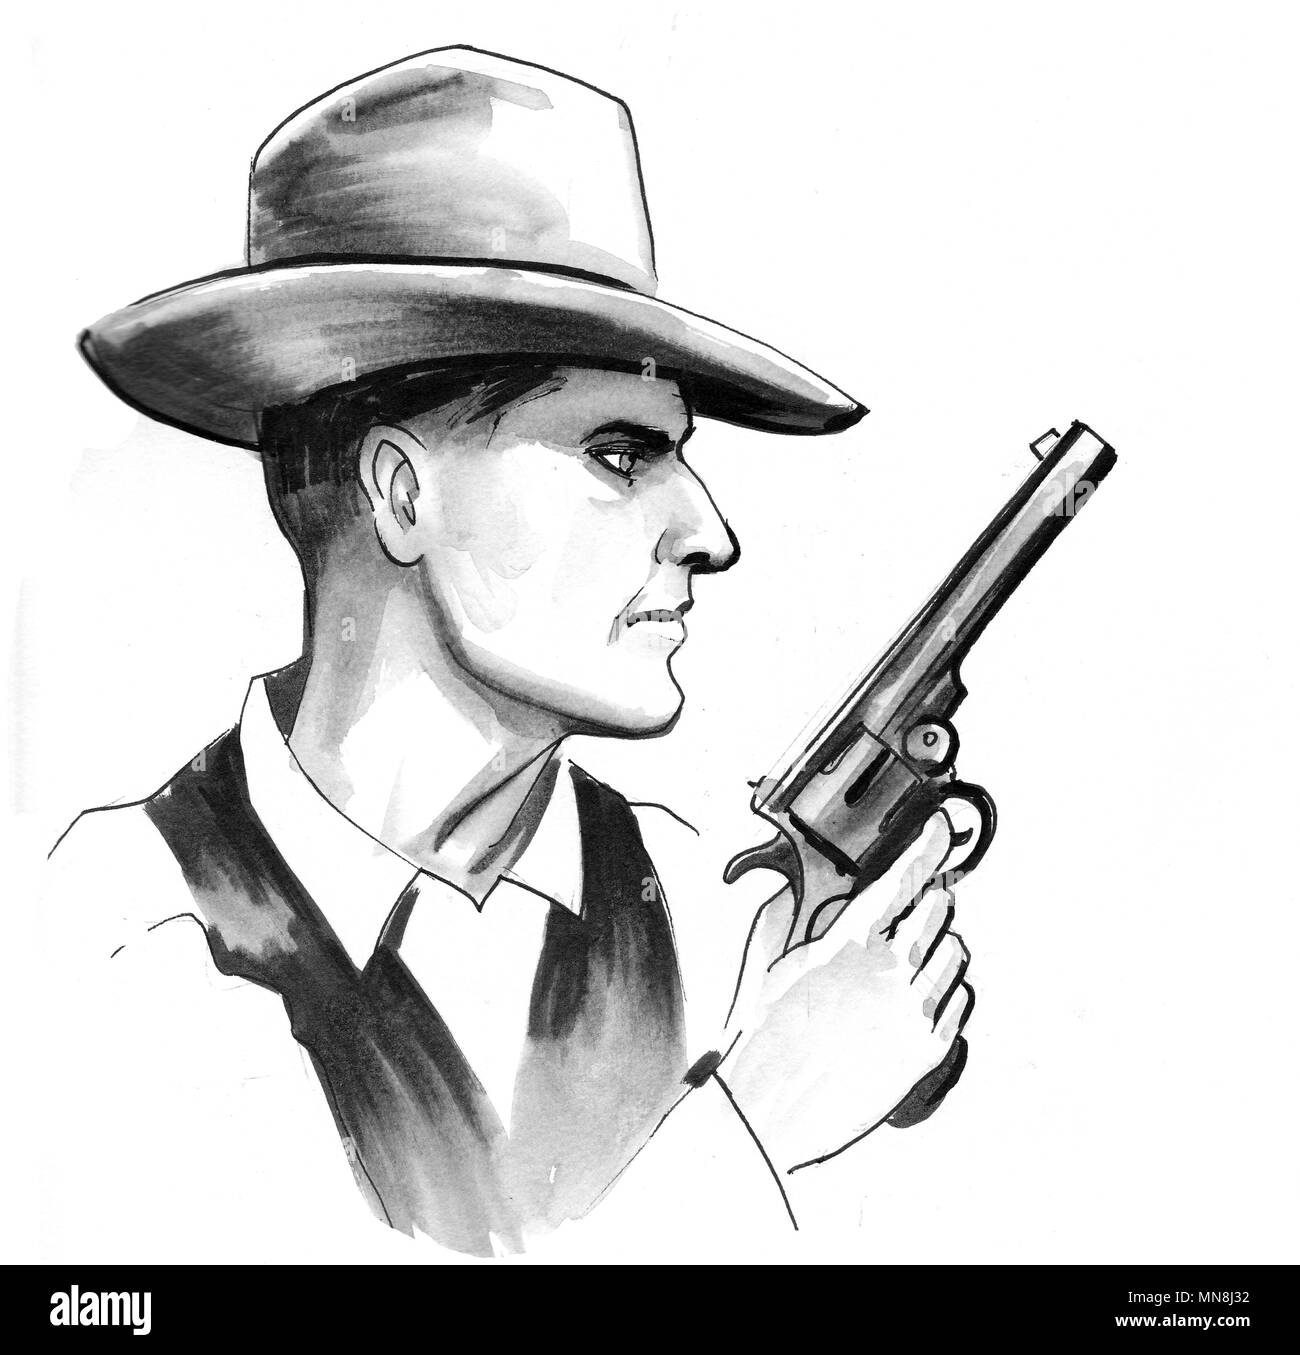 Sheriff mit einem Revolver Pistole. Tinte schwarz-weiss Zeichnung Stockfoto